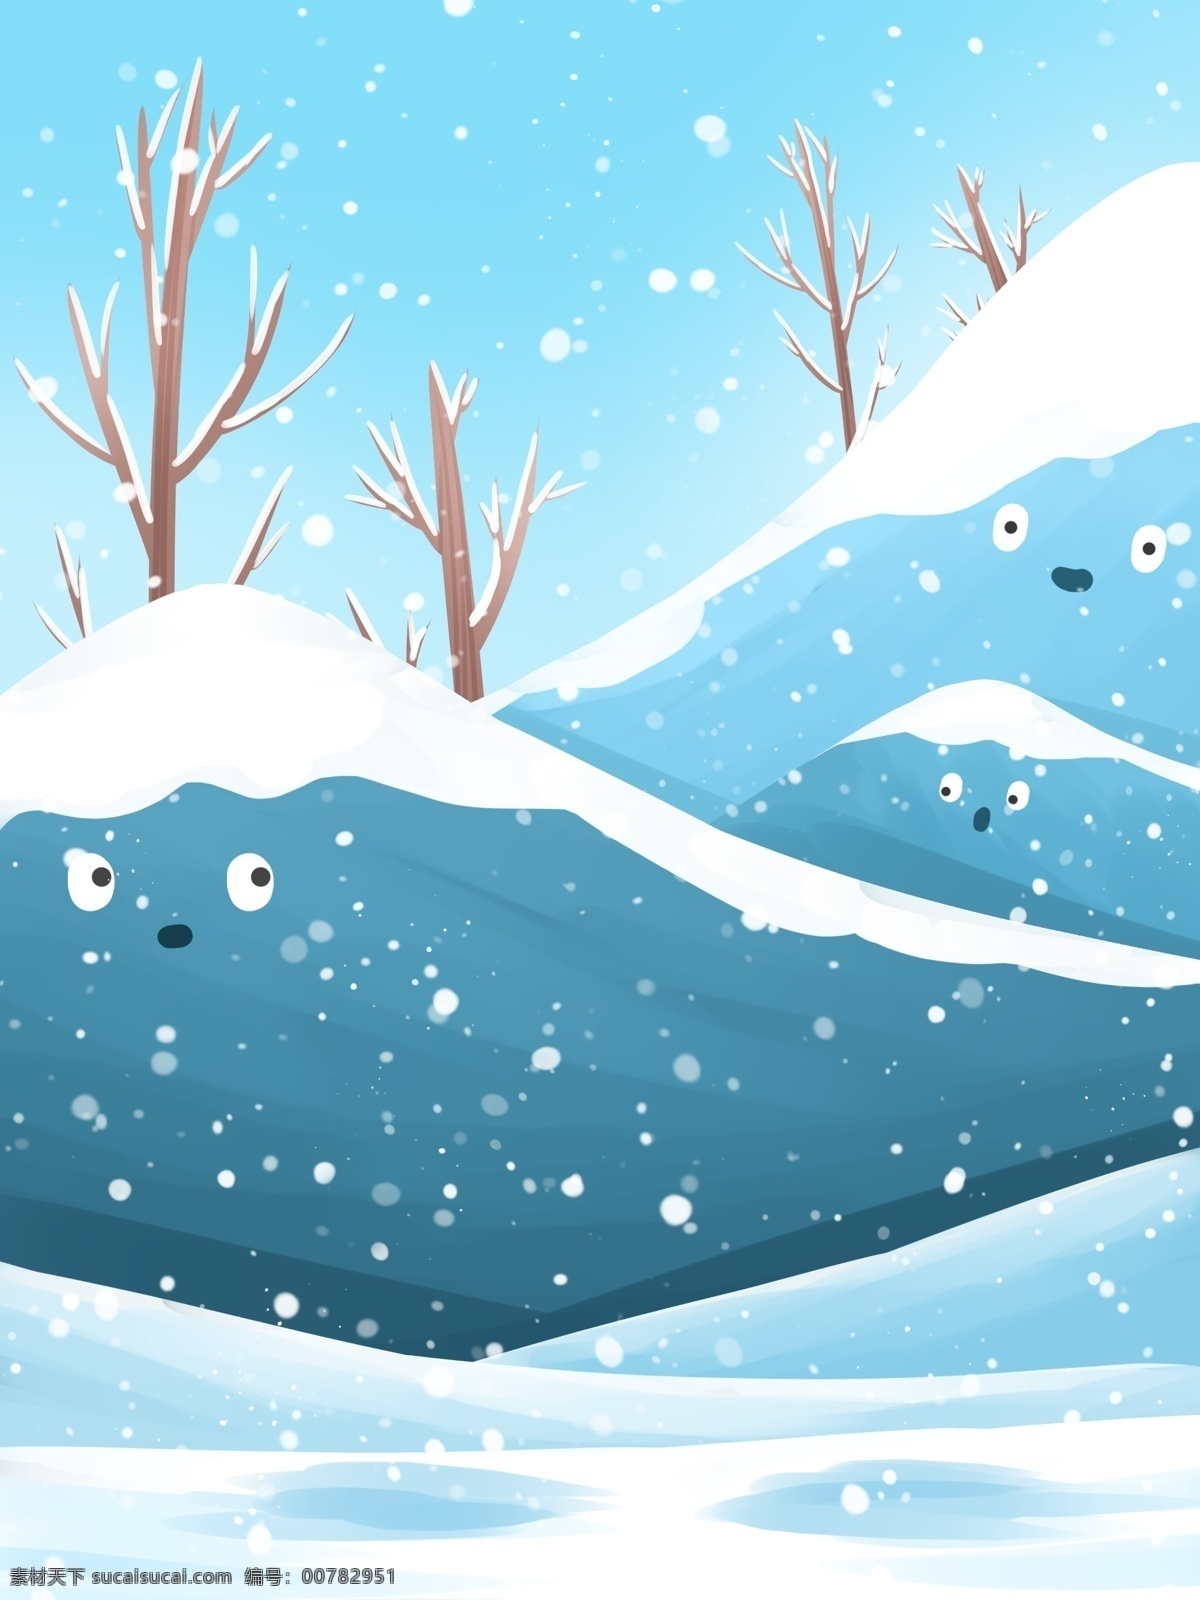 传统 冬季 节气 雪景 背景 唯美 简约蓝色 雪地 冬至背景 下雪 冬天 冬至节气 传统节气 树木